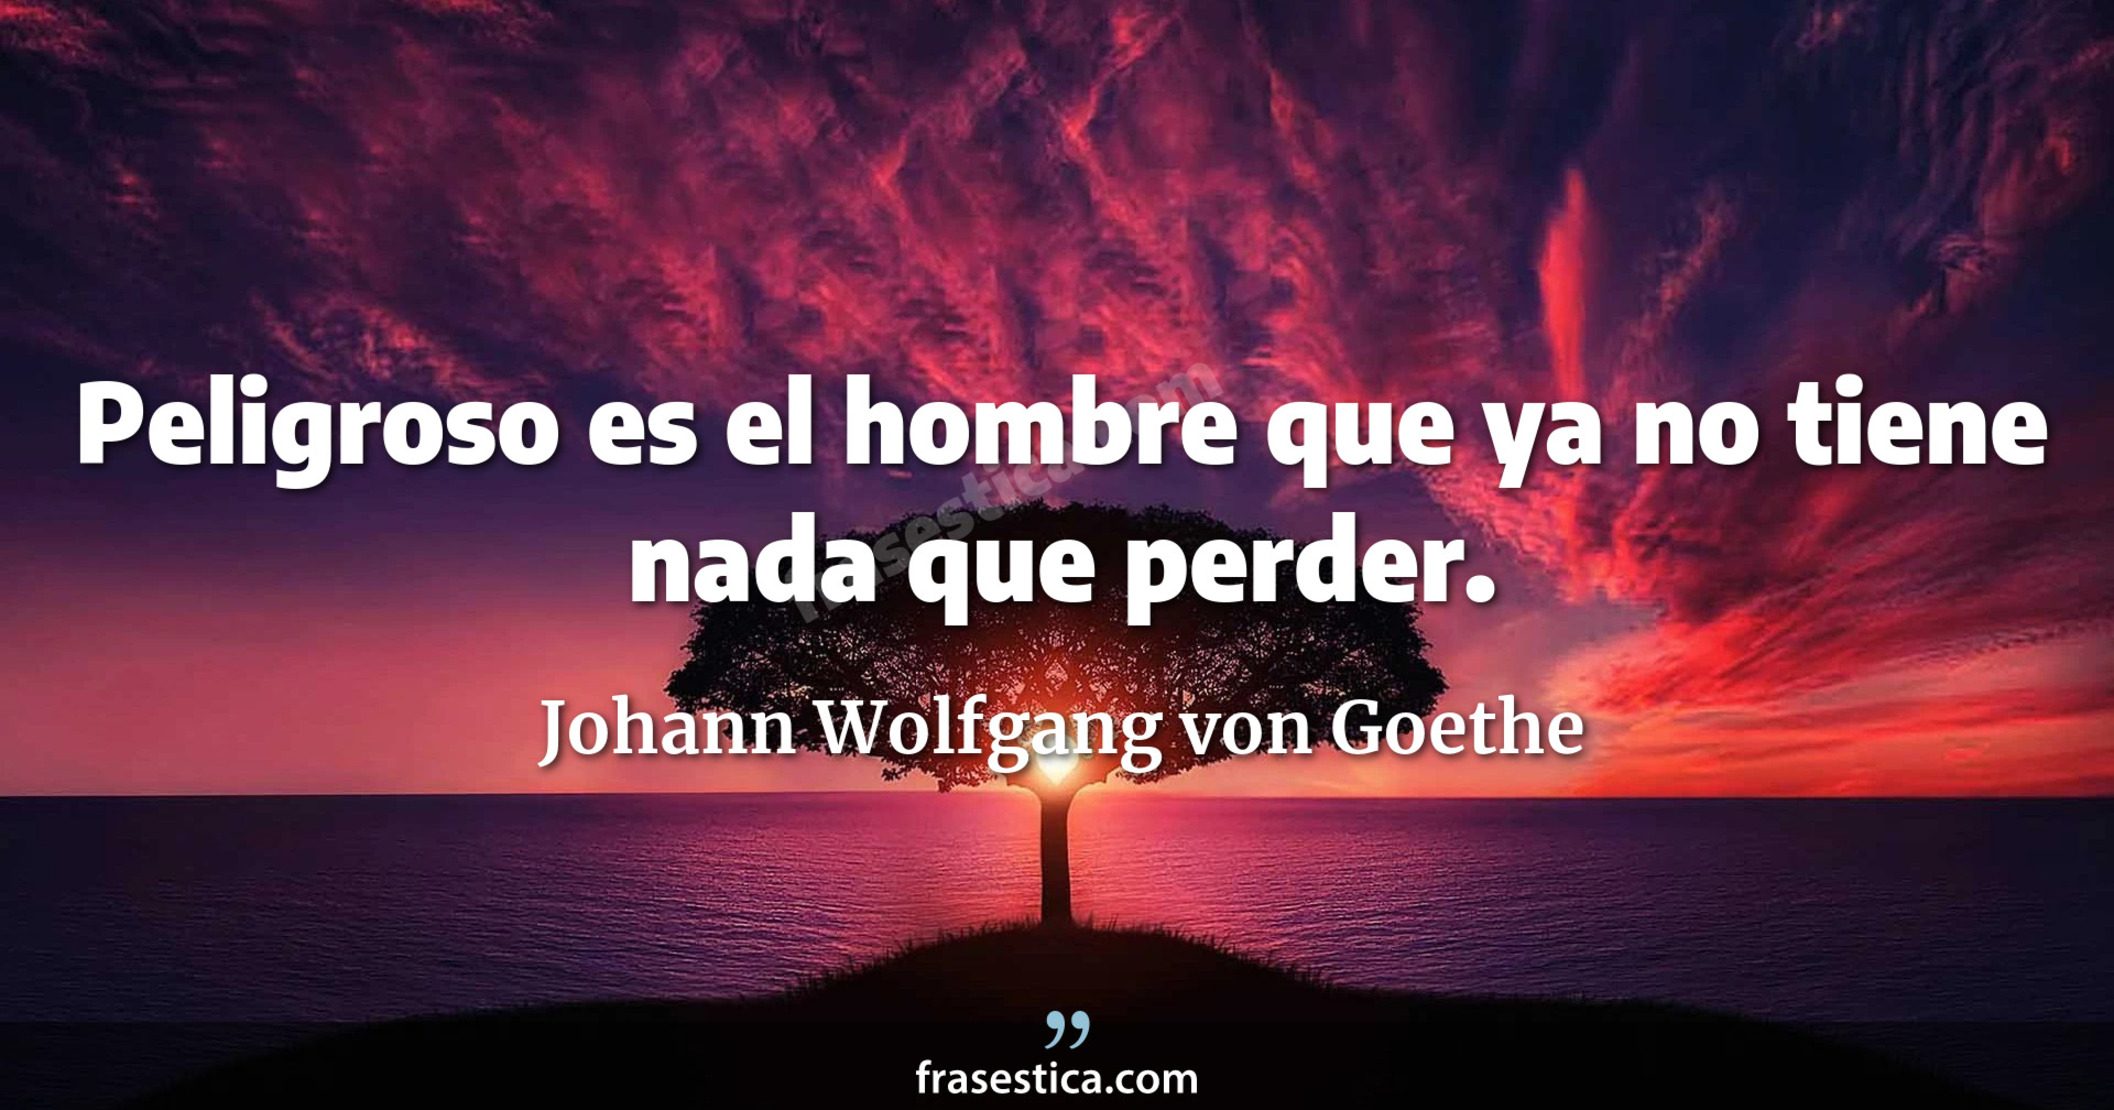 Peligroso es el hombre que ya no tiene nada que perder. - Johann Wolfgang von Goethe